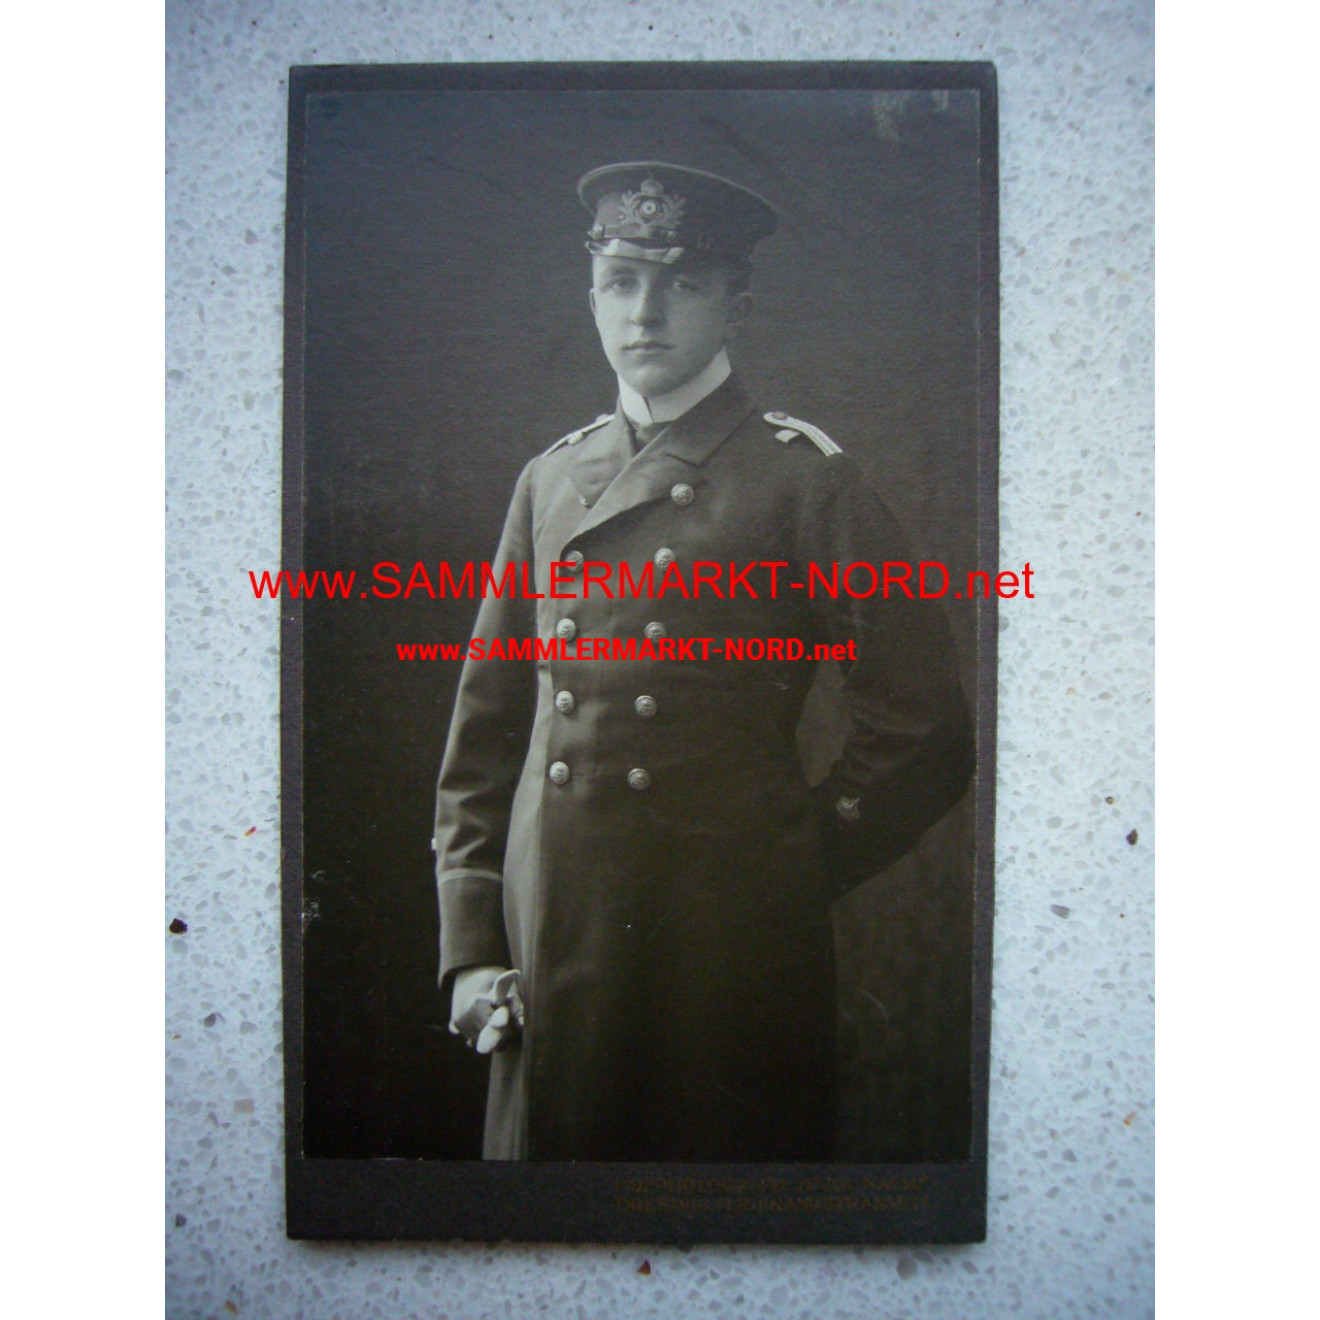 Kabinettfoto - Kaiserliche Marine - Offizier mit Mantel